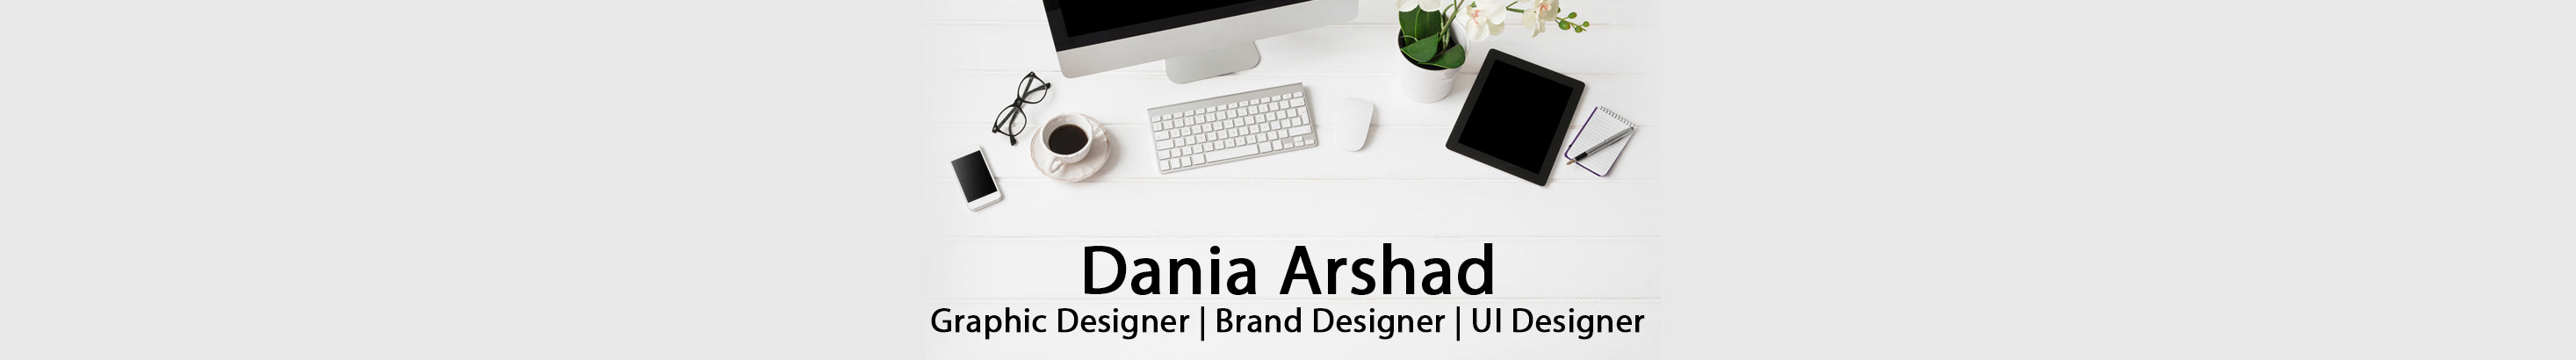 Bannière de profil de Dania Arshad